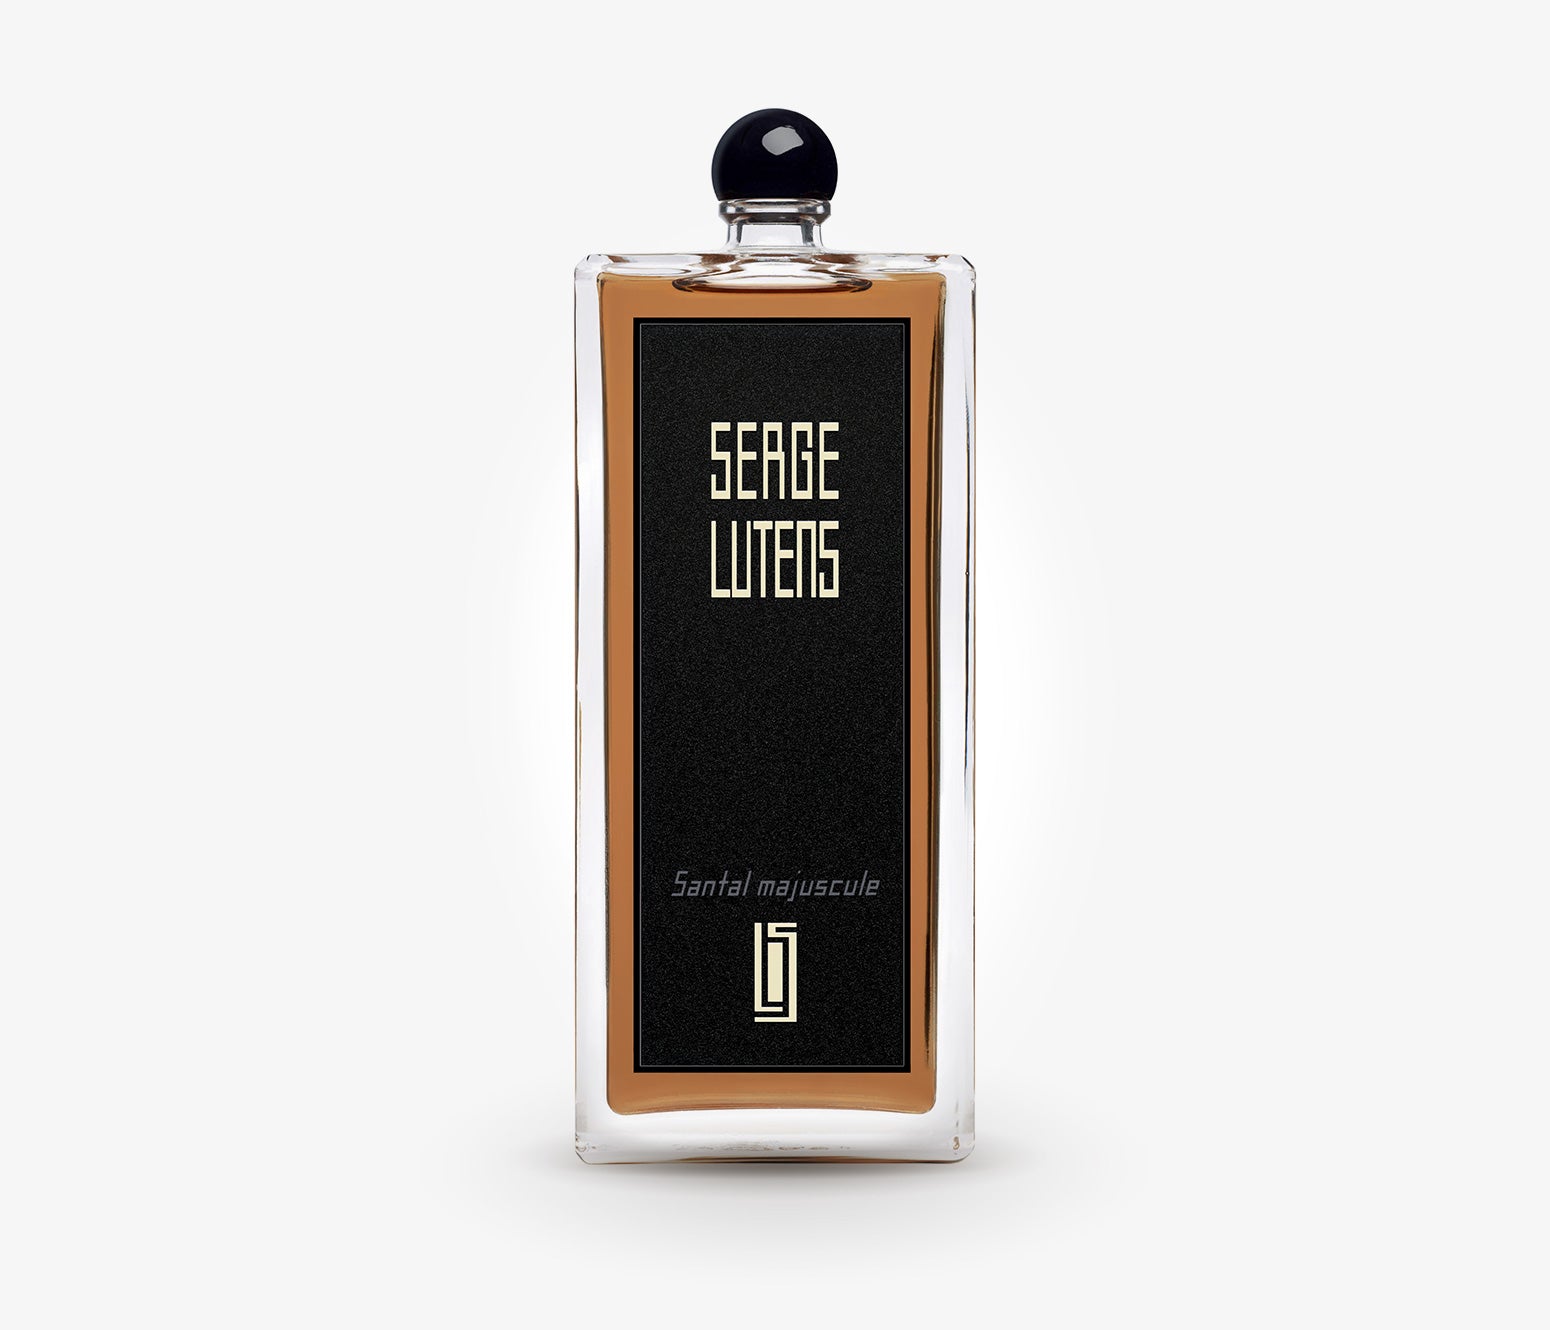 Serge Lutens - Santal Majuscule - 100ml - IXA001 - product image - Fragrance - Les Senteurs